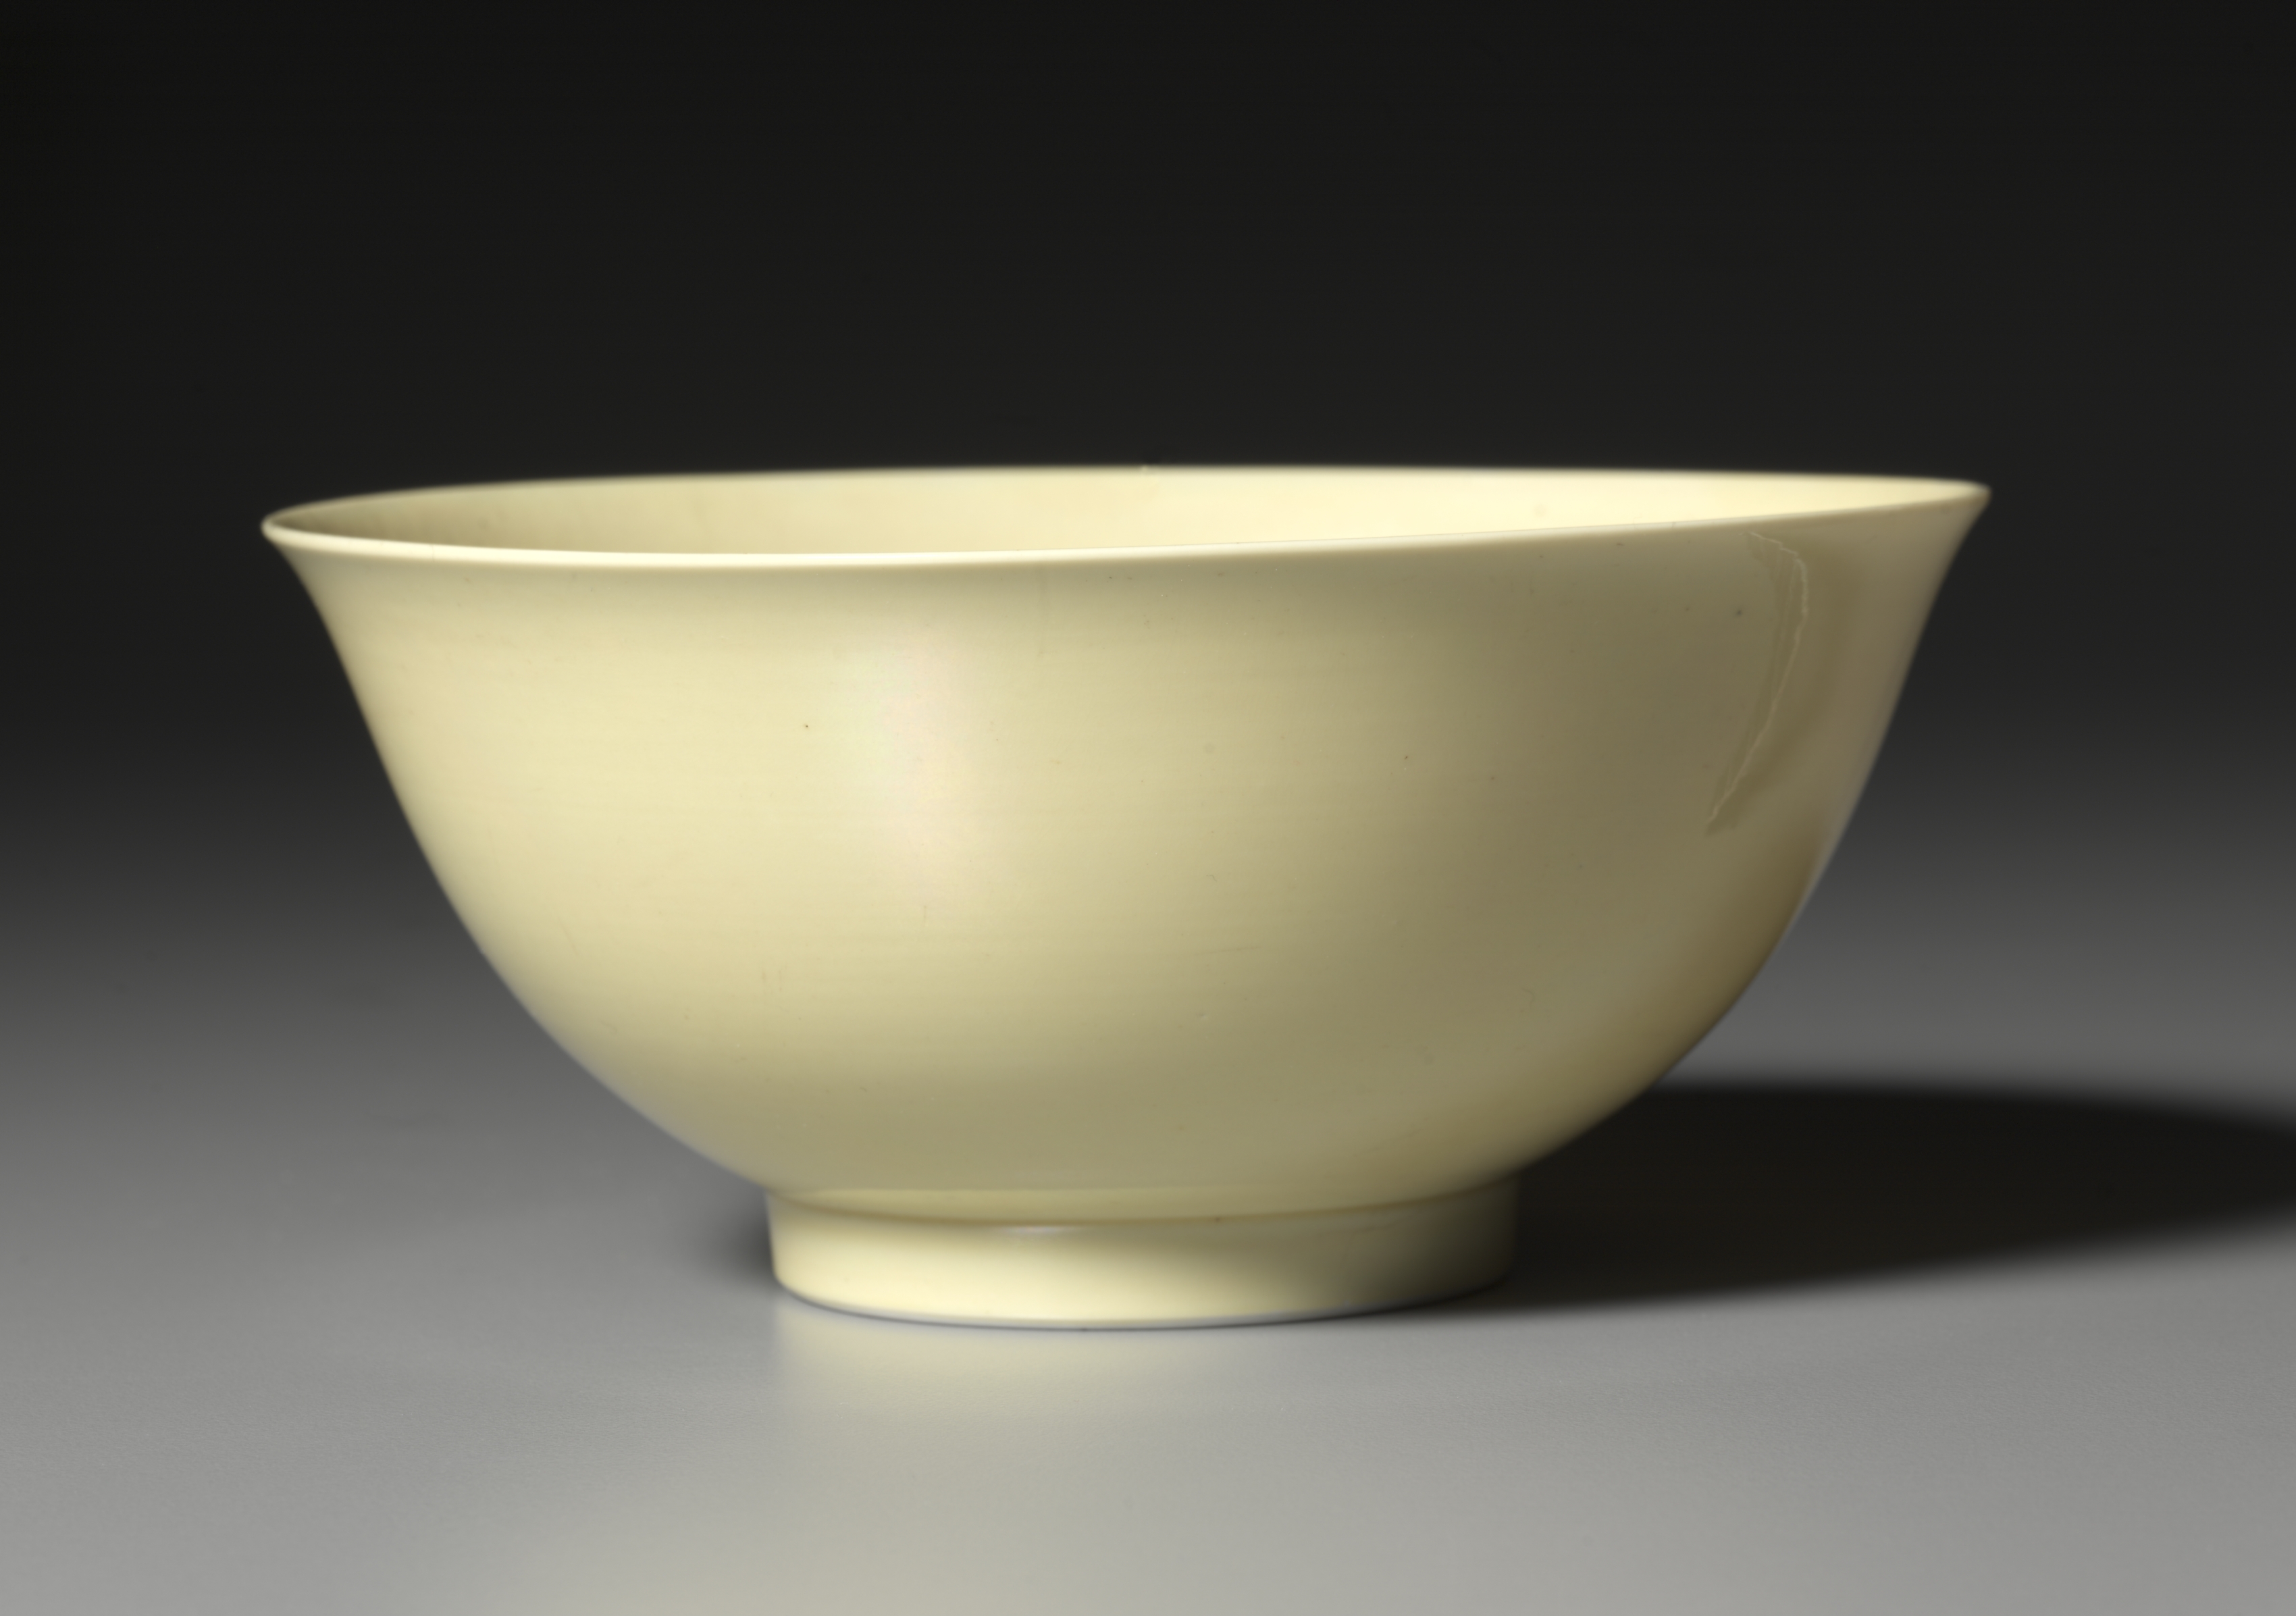 Bowl with Yellow Glaze